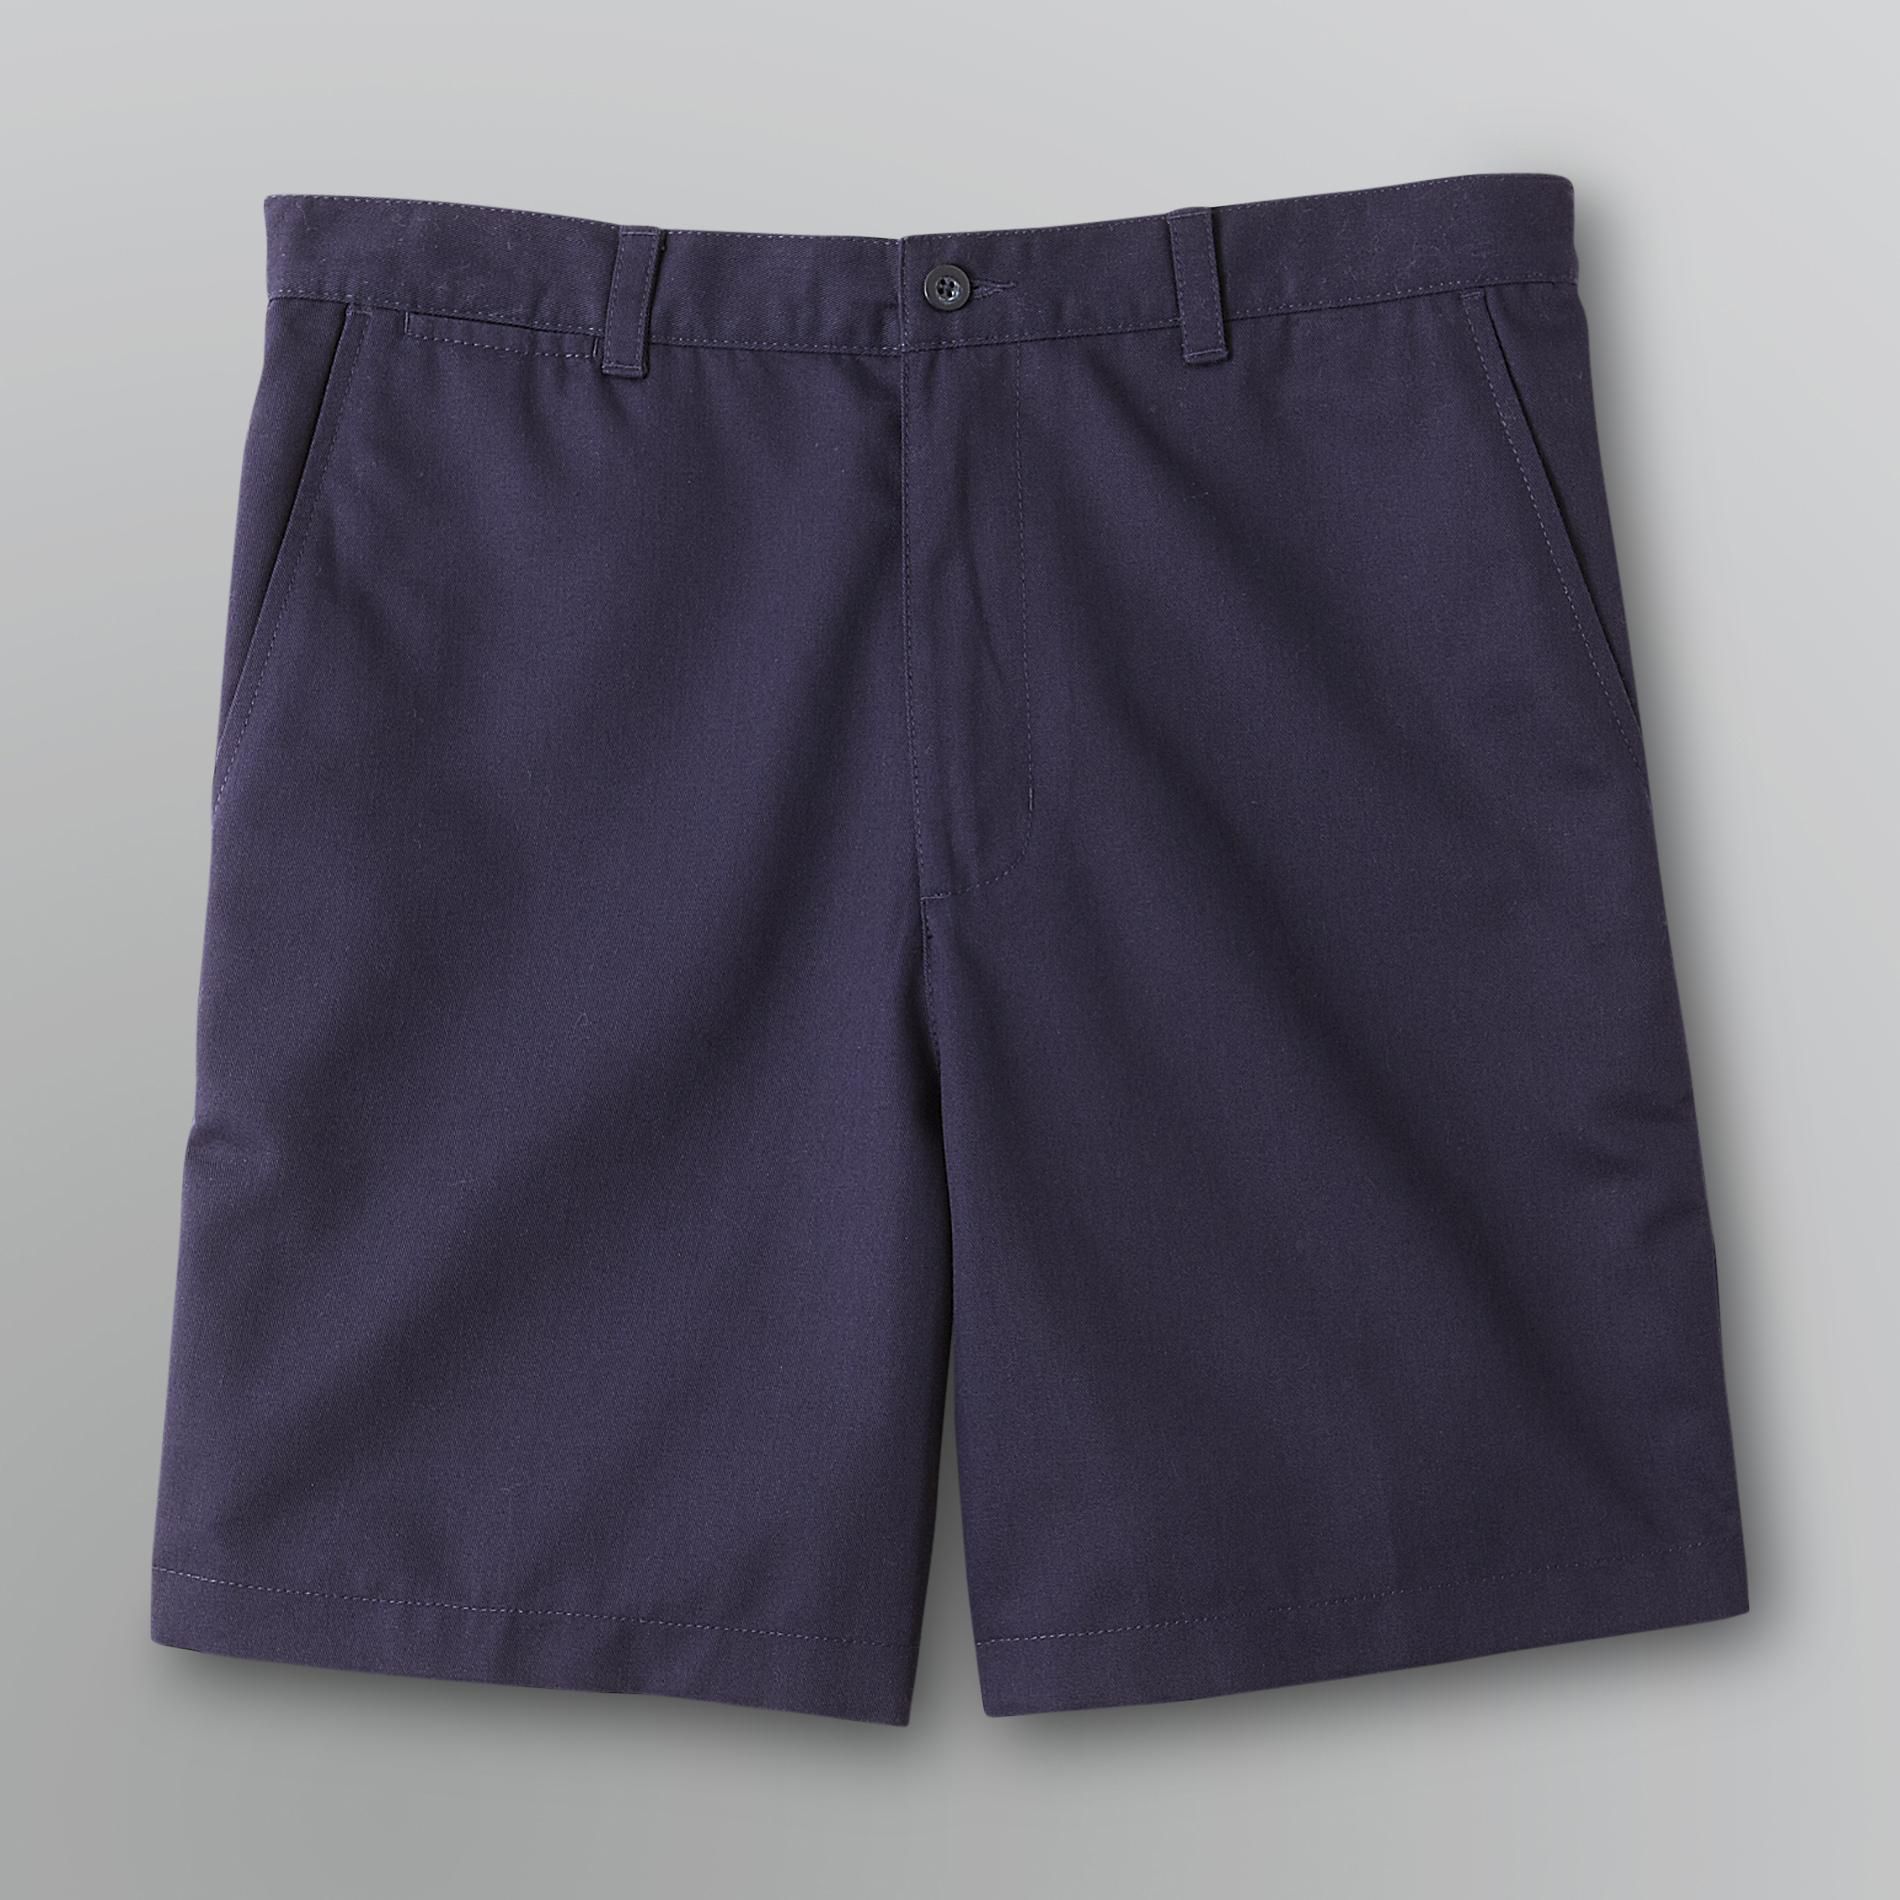 Covington Men's Twill Chino Shorts